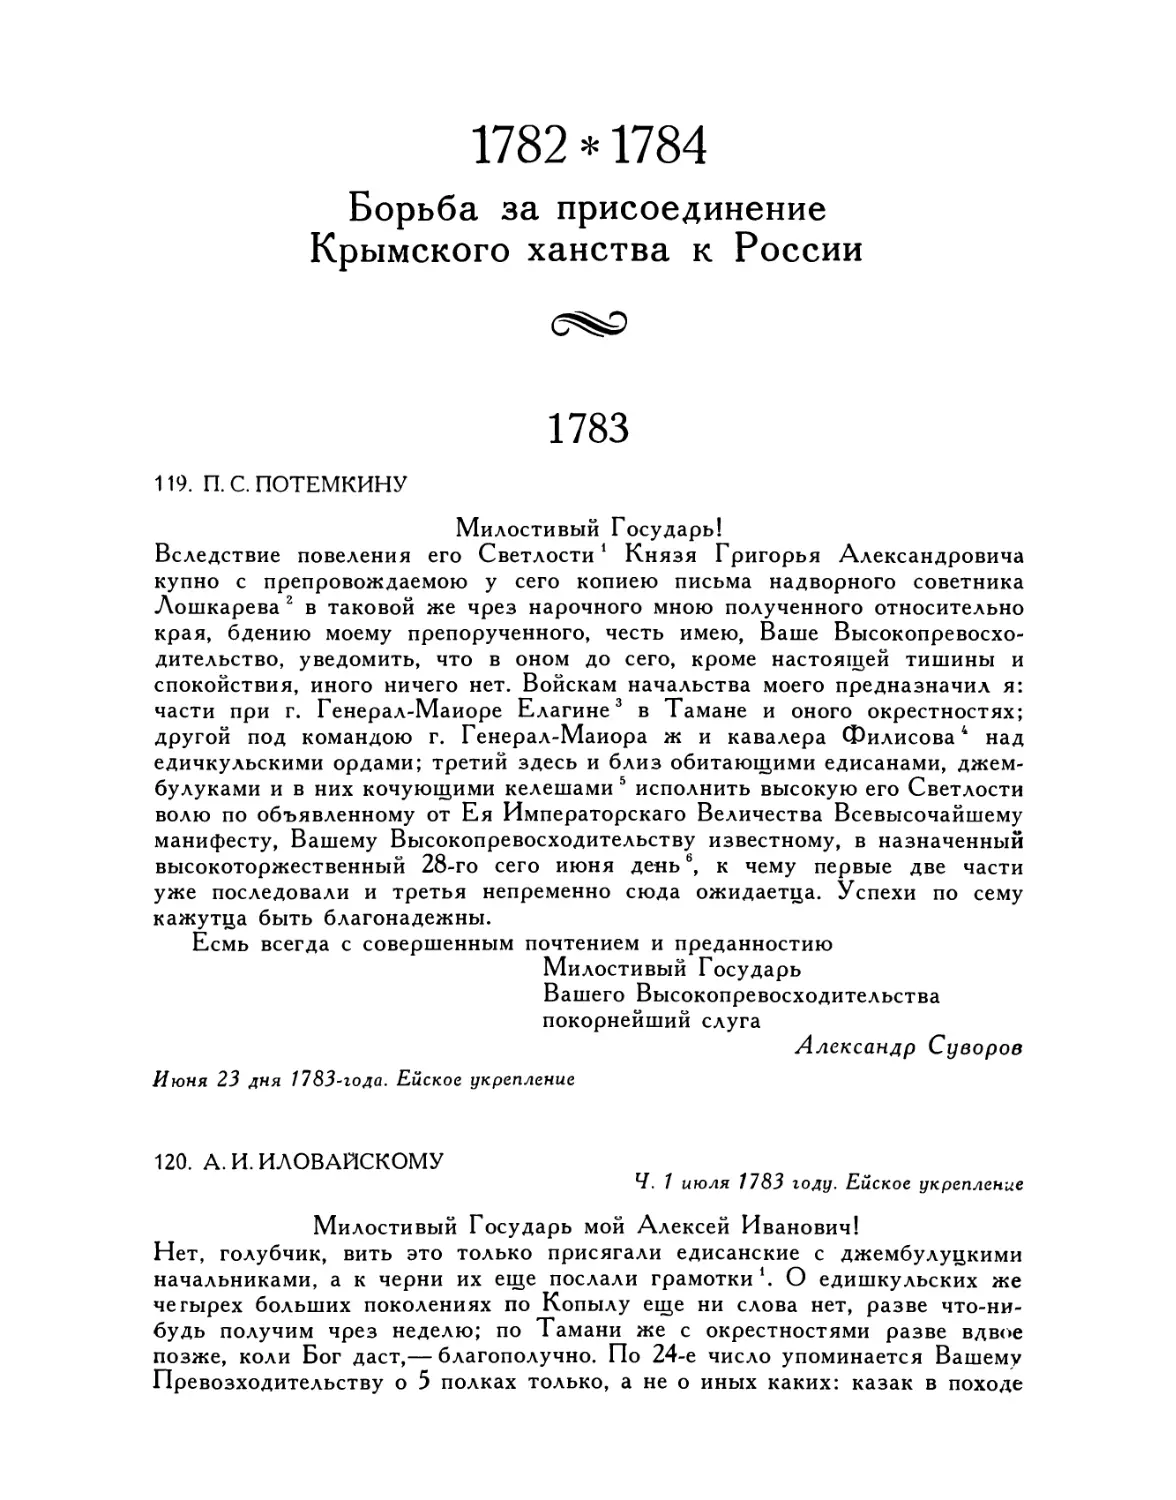 1782—1784 Борьба за присоединение Крымского ханства к России
120. А. И. Иловайскому. 1.VII.1783